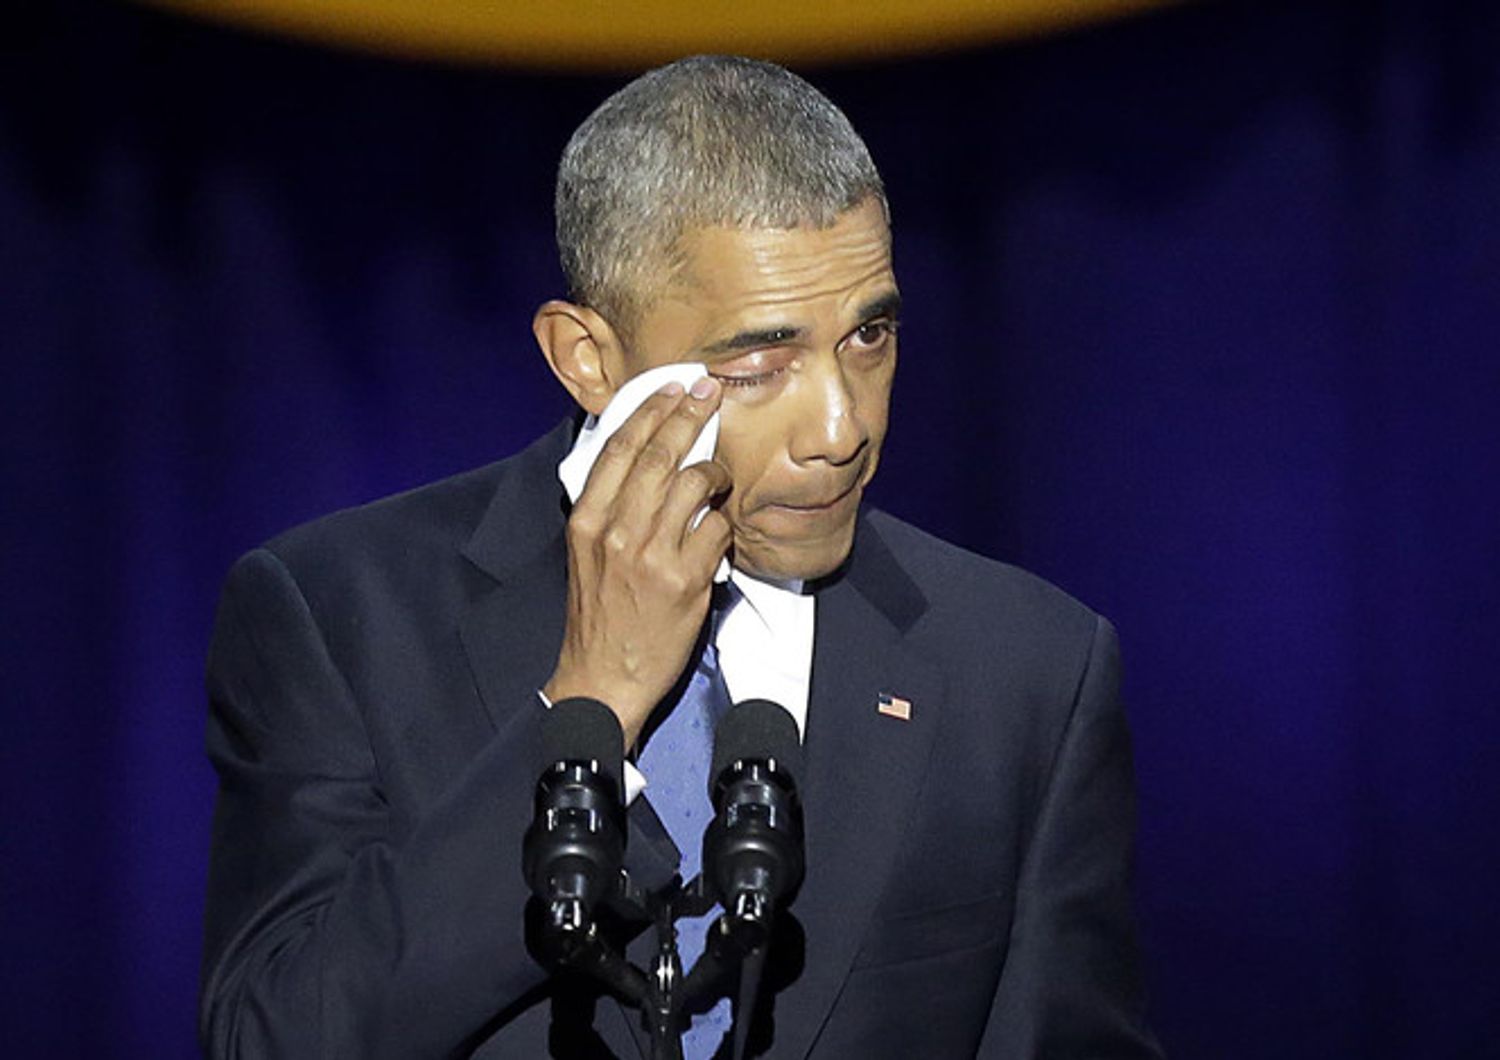 Il presidente degli Stati, Uniti Barack Obama, si commuove durante il suo discorso di addio a Chicago, Illinois. Barack chiude il libro sulla sua presidenza cercando di sollevare gli animi dei sostenitori scossi dall'elezione di Donald Trump (foto Afp)&nbsp;